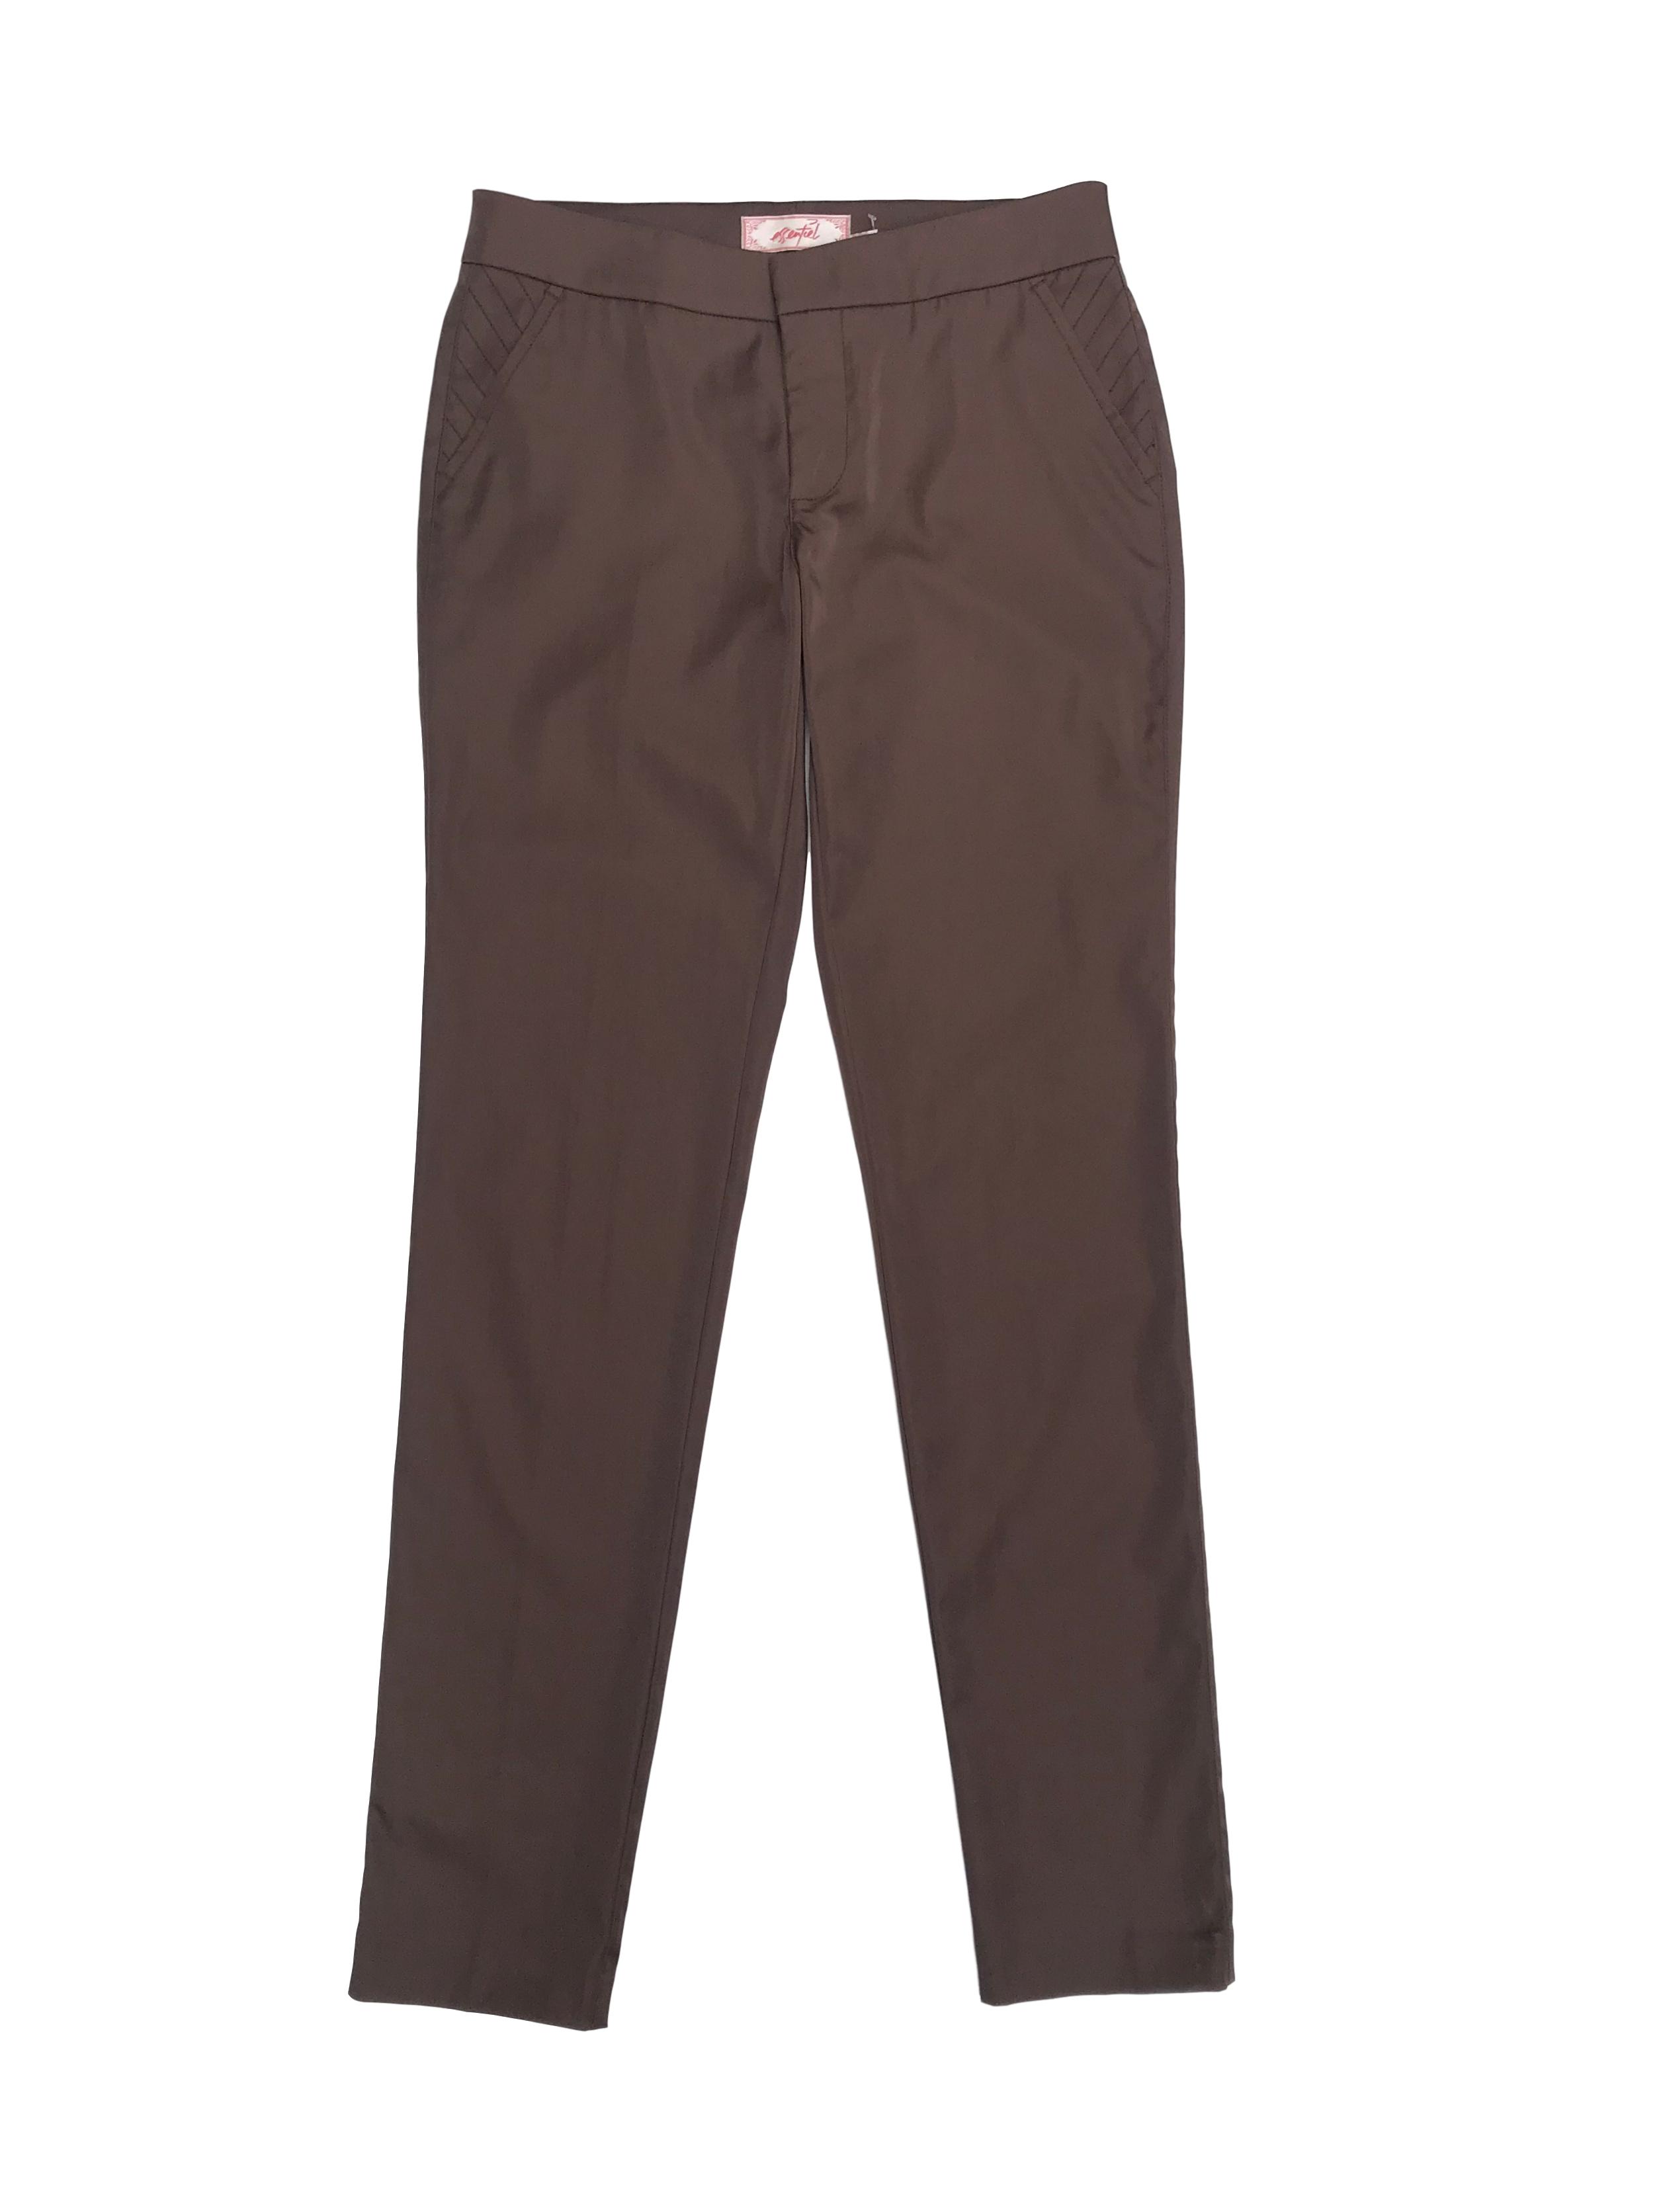 Pantalón Essentiel marrón satinado, tiro medio, corte slim, y con bolsillos. Pretina 76cm